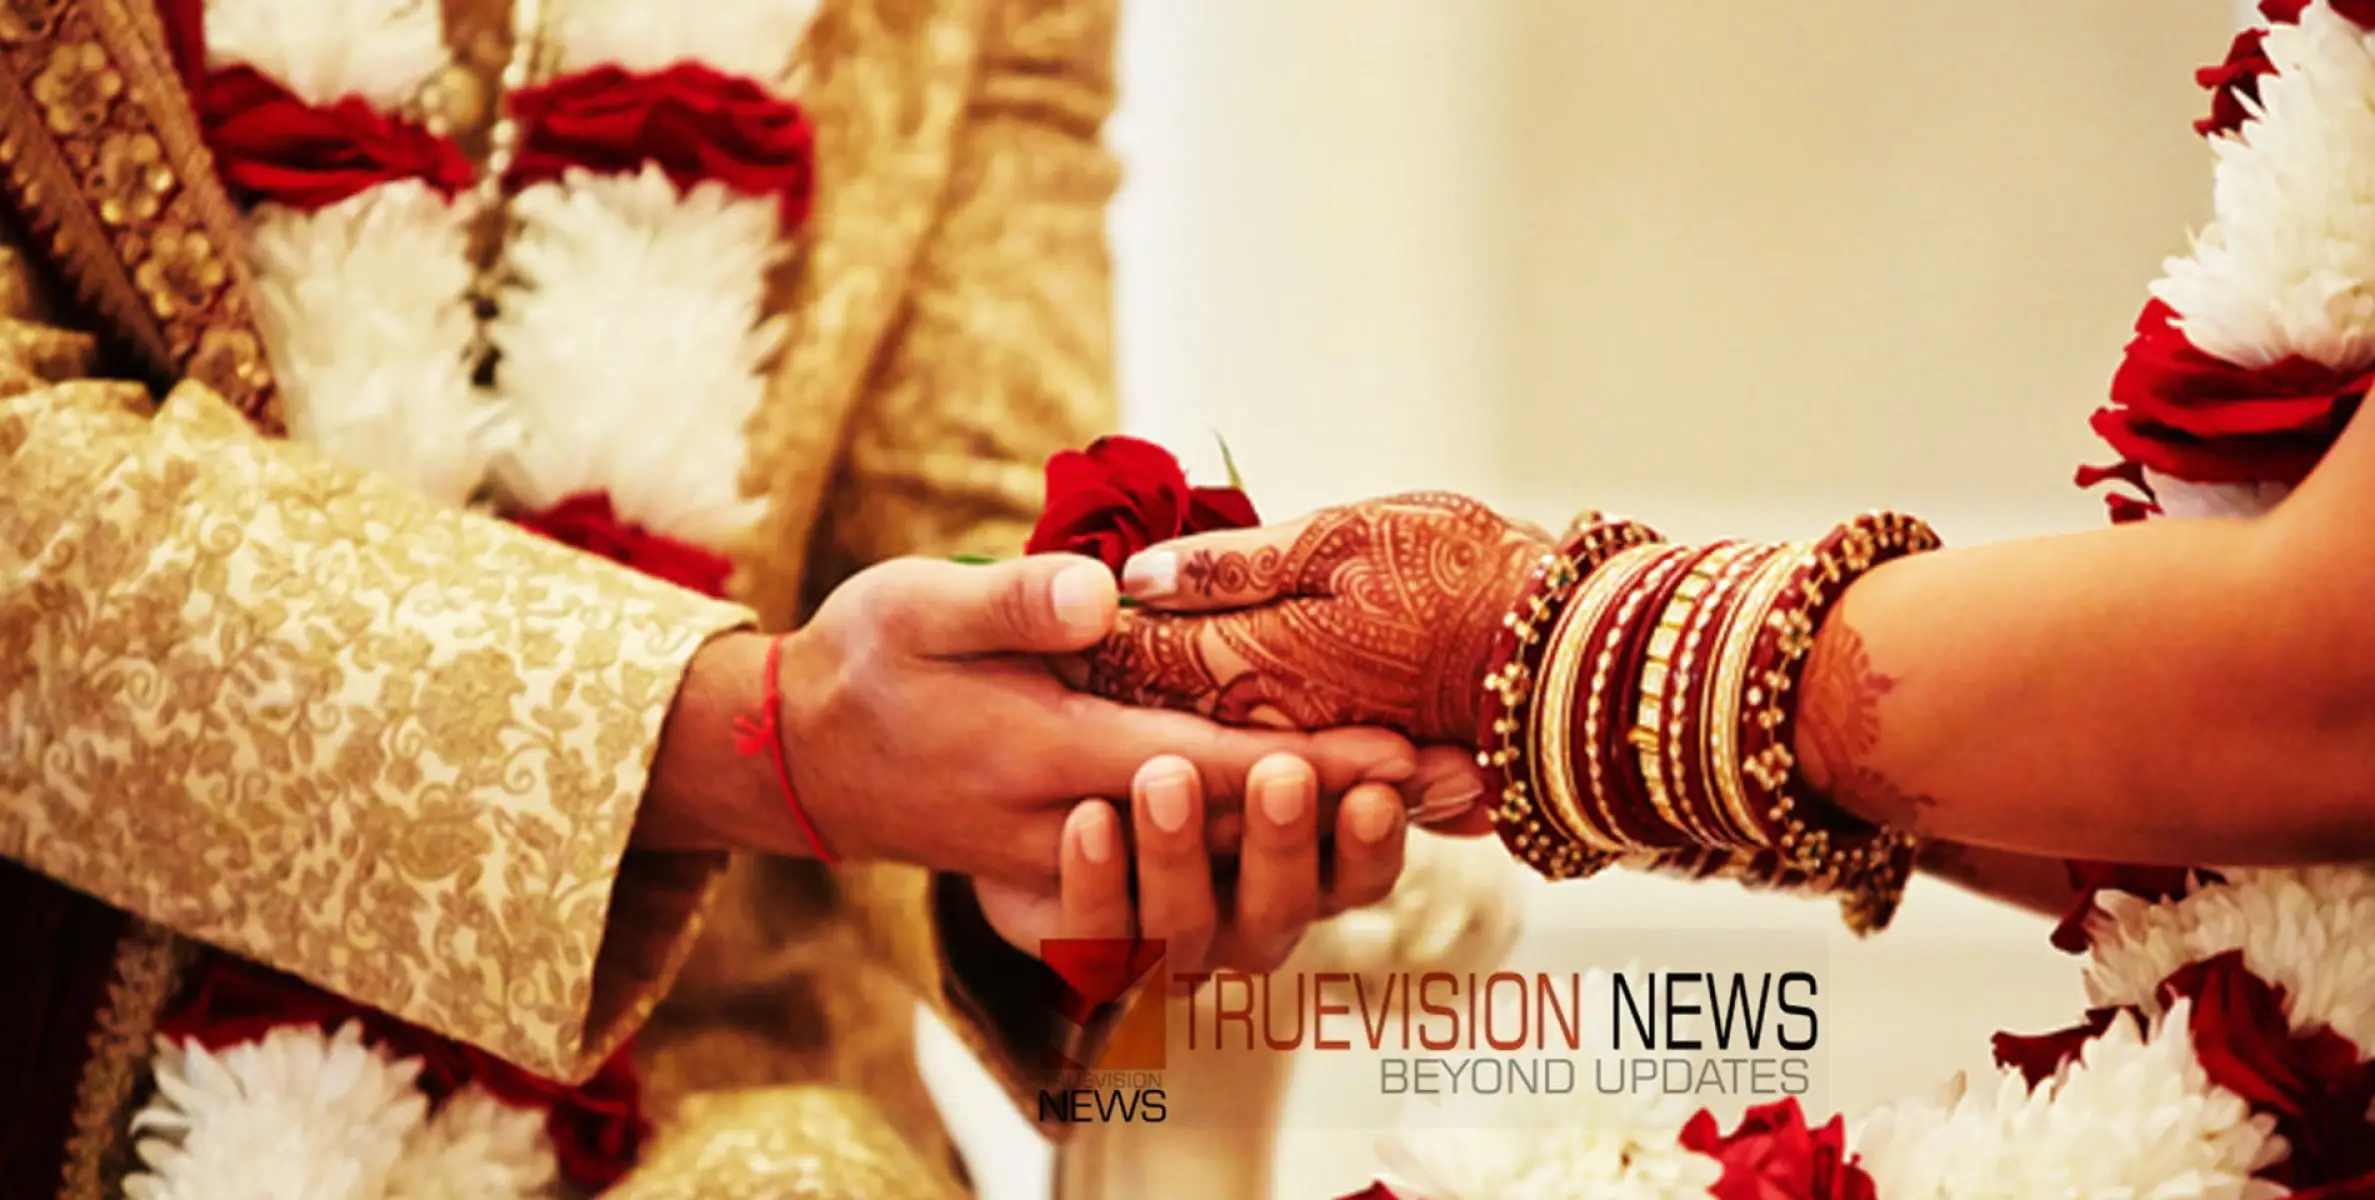 #wedding | അമ്മായിഅമ്മയെ വിവാഹം ചെയ്ത് 45കാരൻ; രഹസ്യ ബന്ധം കണ്ടുപിടിച്ച് വിവാഹം നടത്തിക്കൊടുത്തത് ഭാര്യാ പിതാവ്